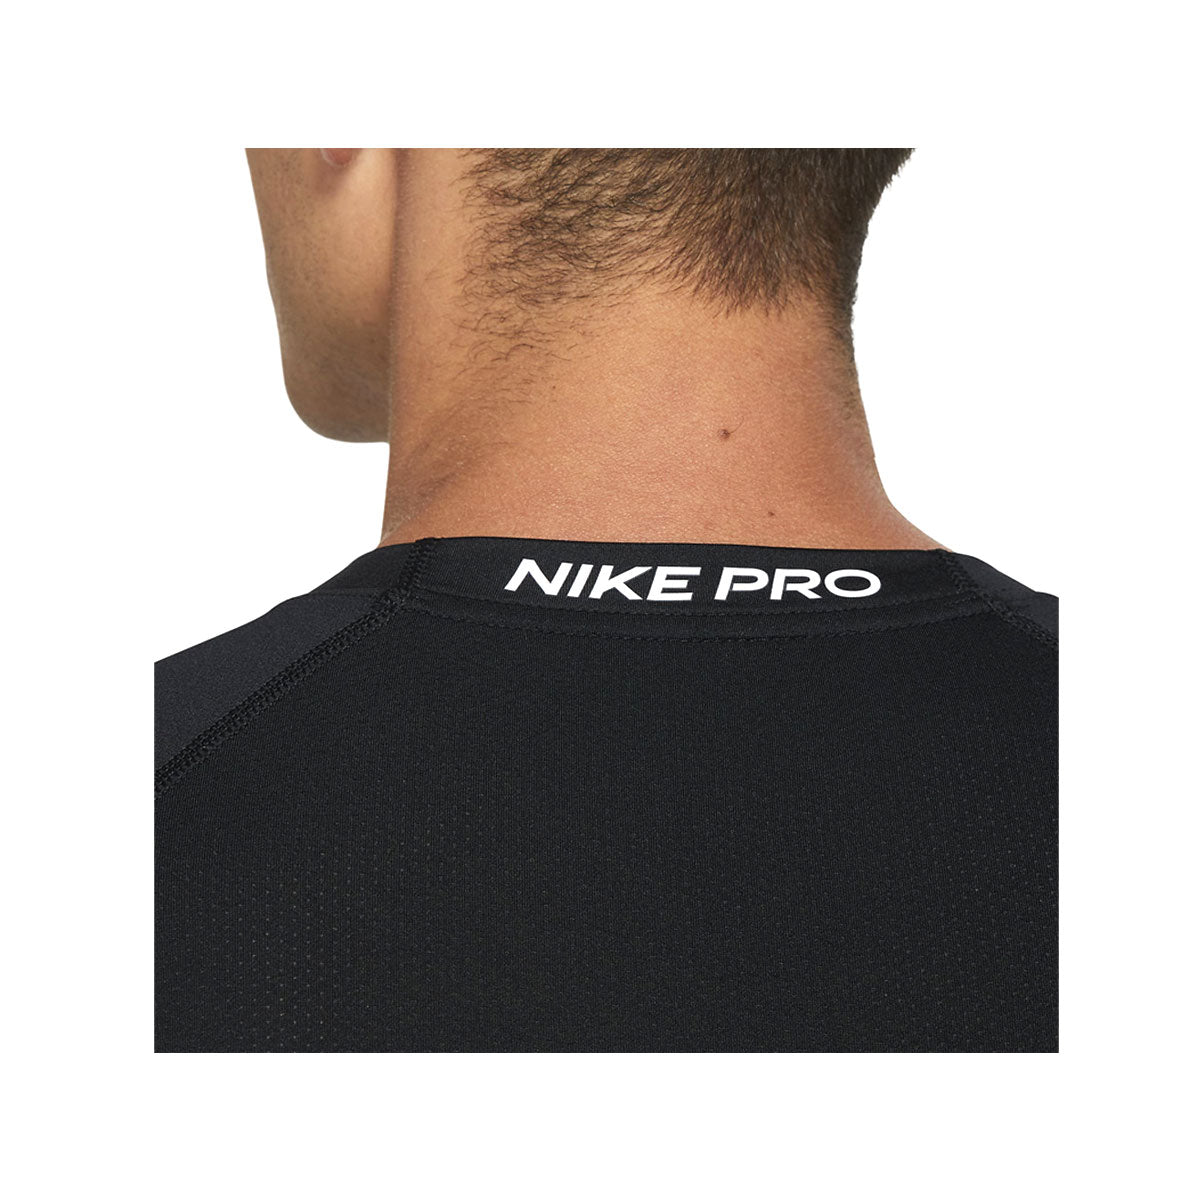 Nike Men's Pro Dri-FIT Tight Short-Sleeve Top